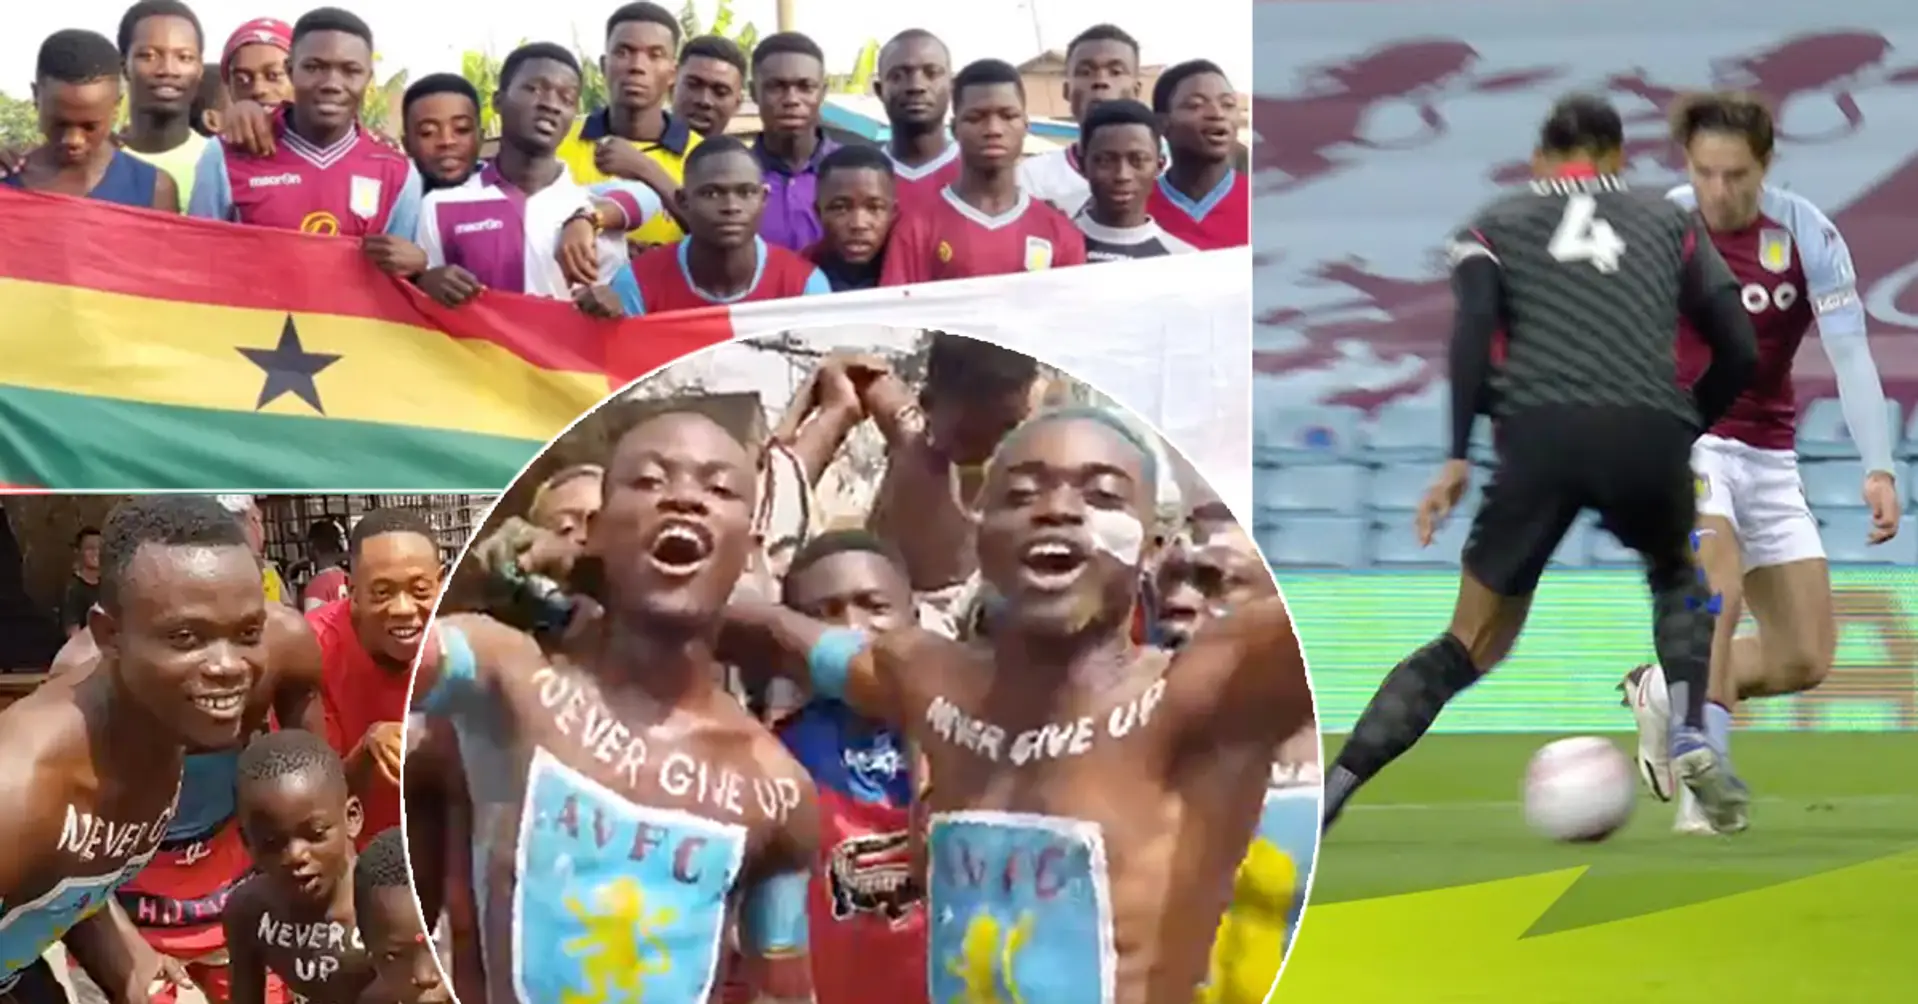 Eine Stadt in Afrika unterstützt fast ausschließlich Aston Villa - und hat sogar einen Fußball-"Gott"